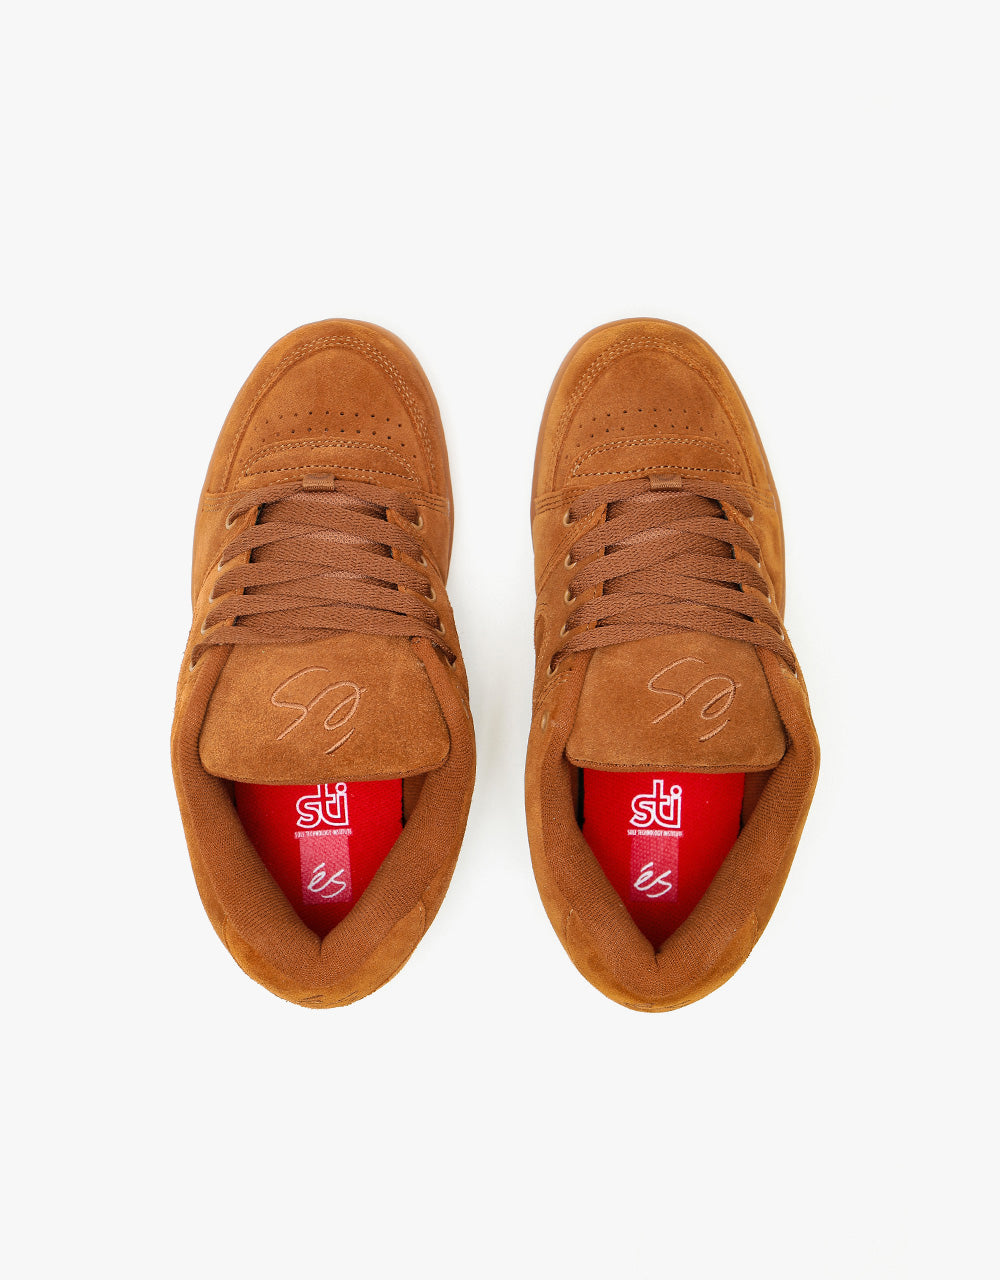 éS Accel OG Skate Shoes - Brown/Gum